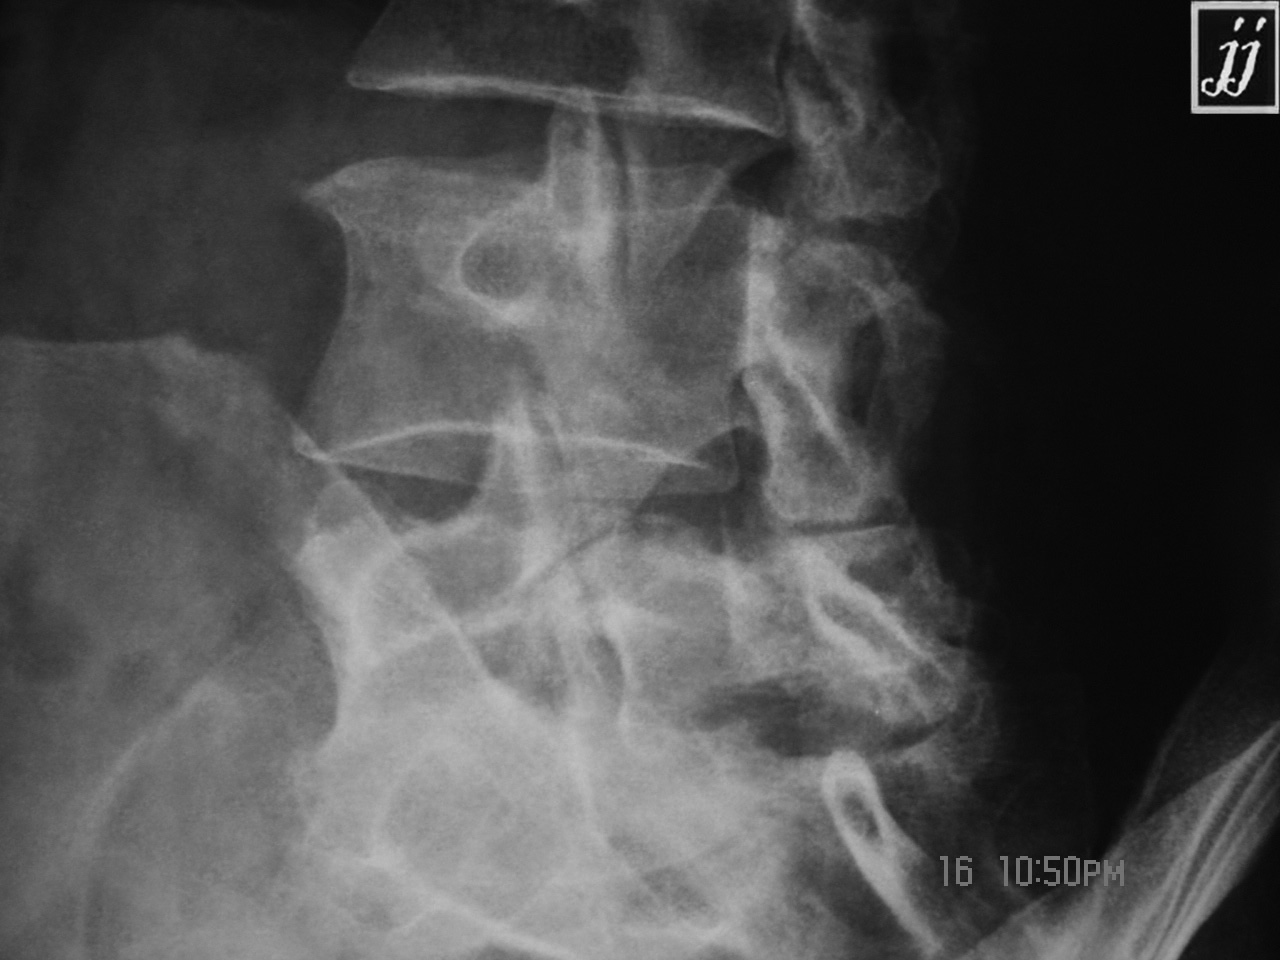 Spine Neck Fracture Of Scotty Dog At L5 Spondylolysis 4 